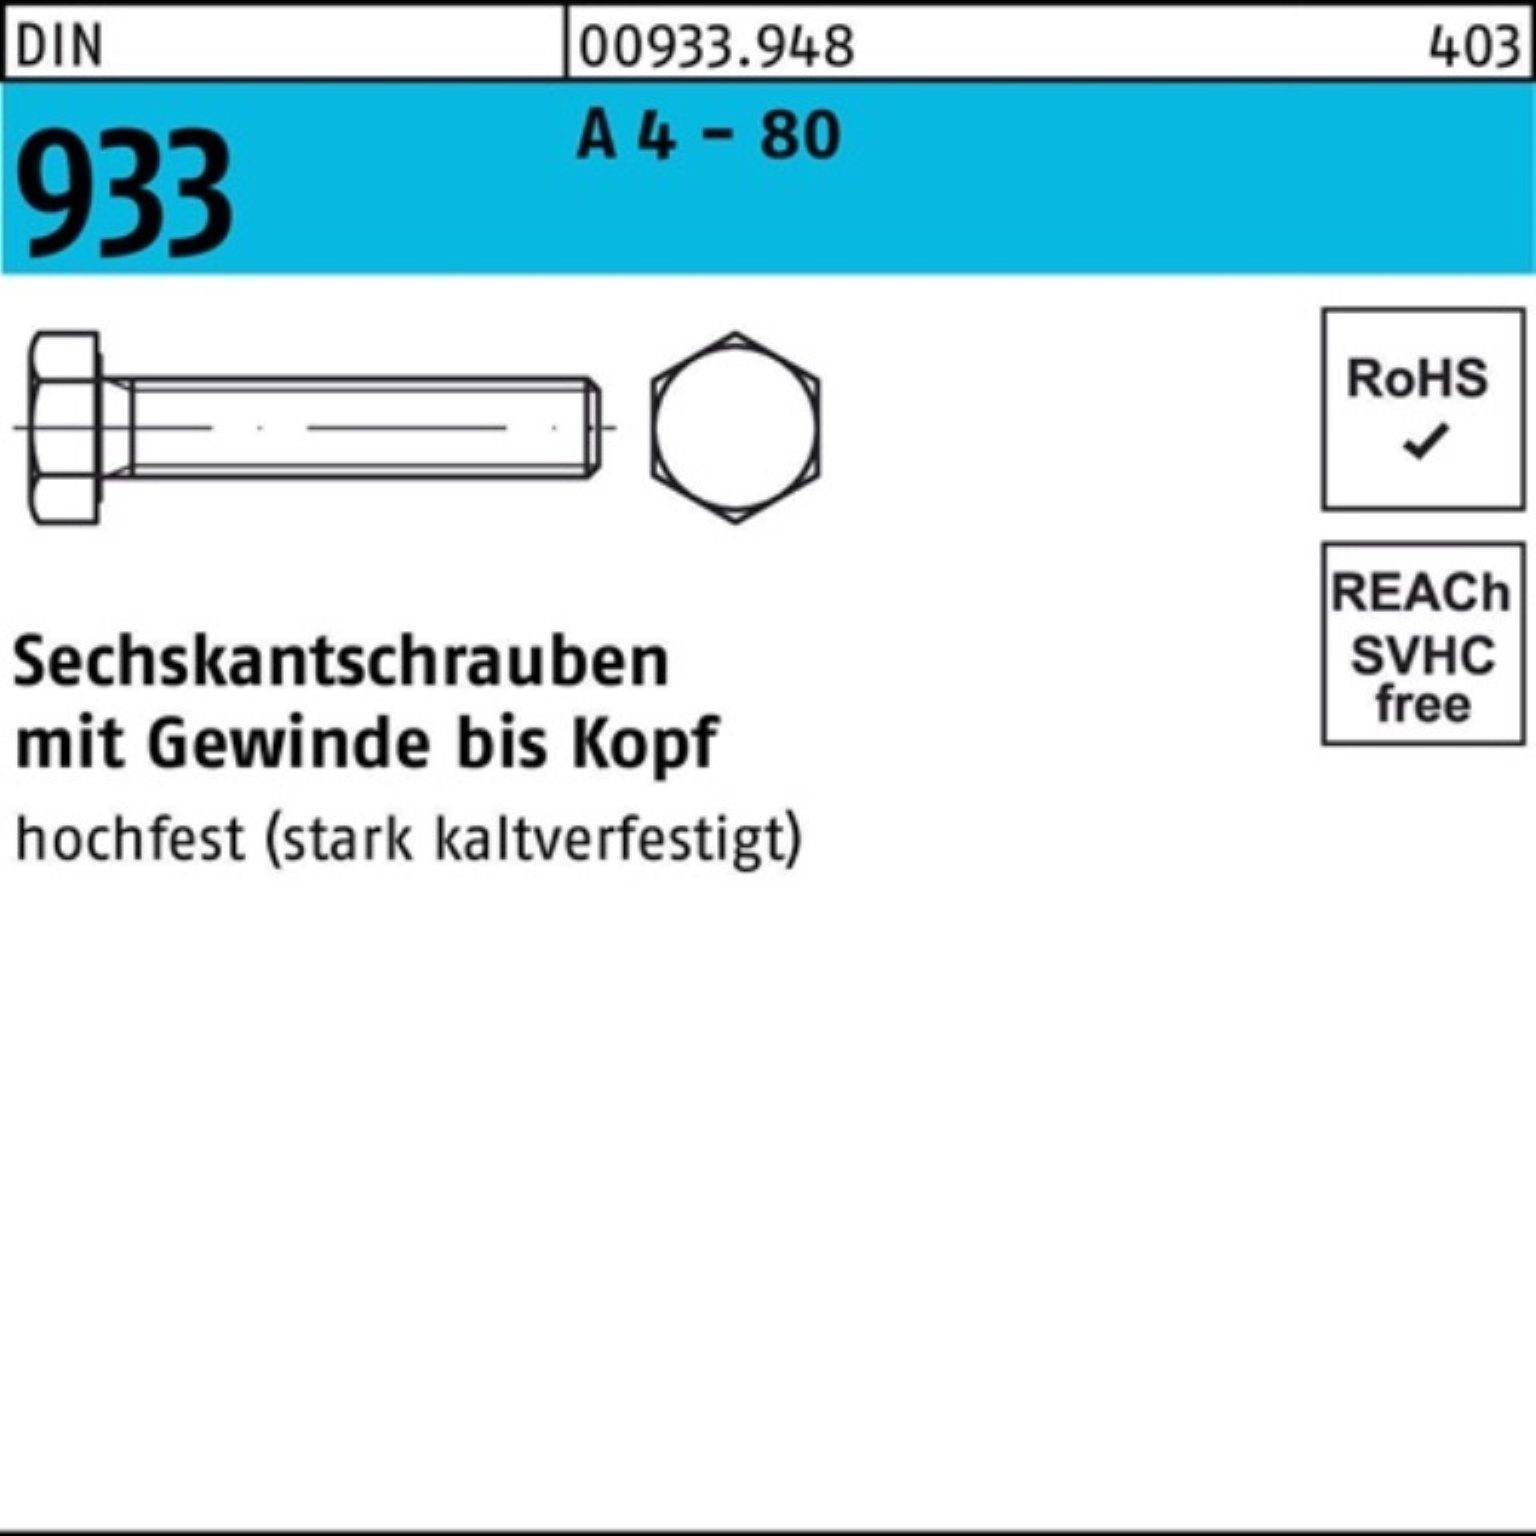 Sechskantschraube - Pack 100er A Stück 933 4 80 Reyher 110 Sechskantschraube DIN M20x DIN VG 1